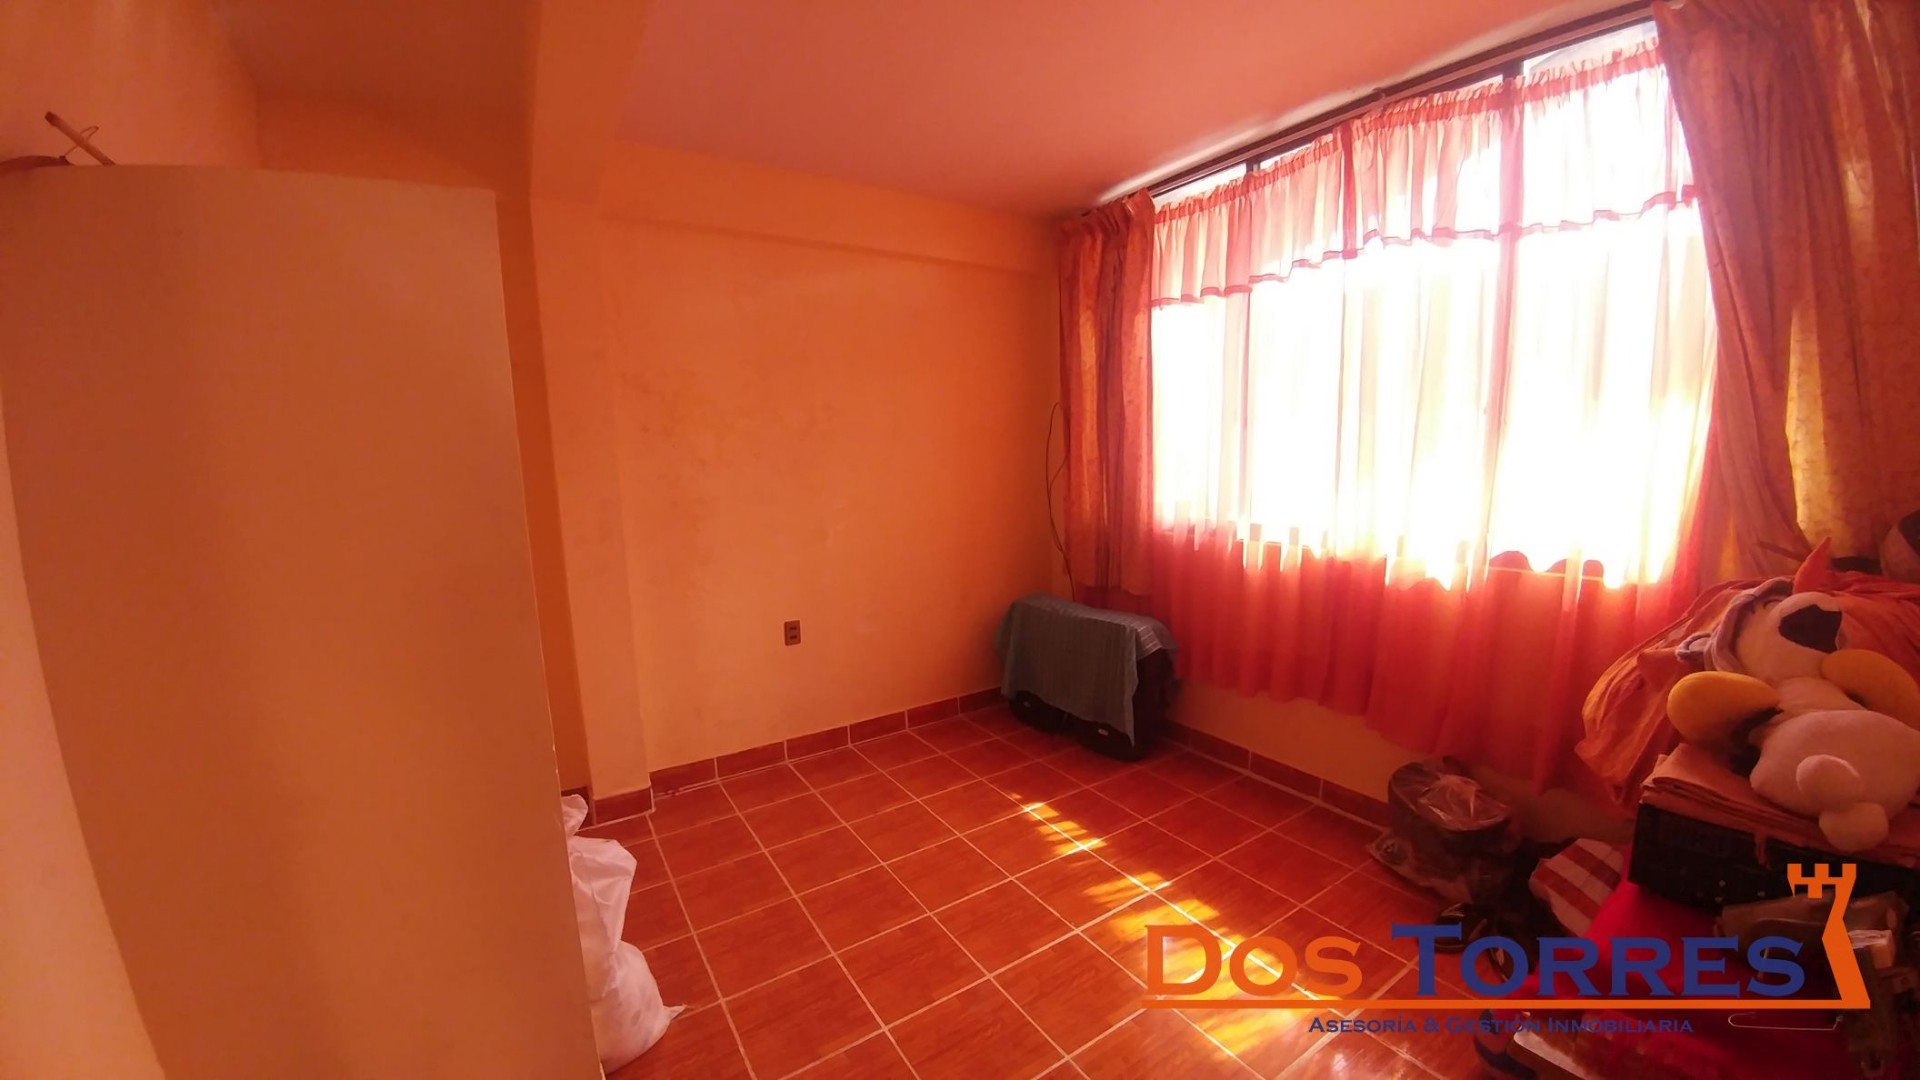 Casa en Venta137.000$us Chillimarca casa en venta con 5 Dormitorios - Ref. 910 Foto 2